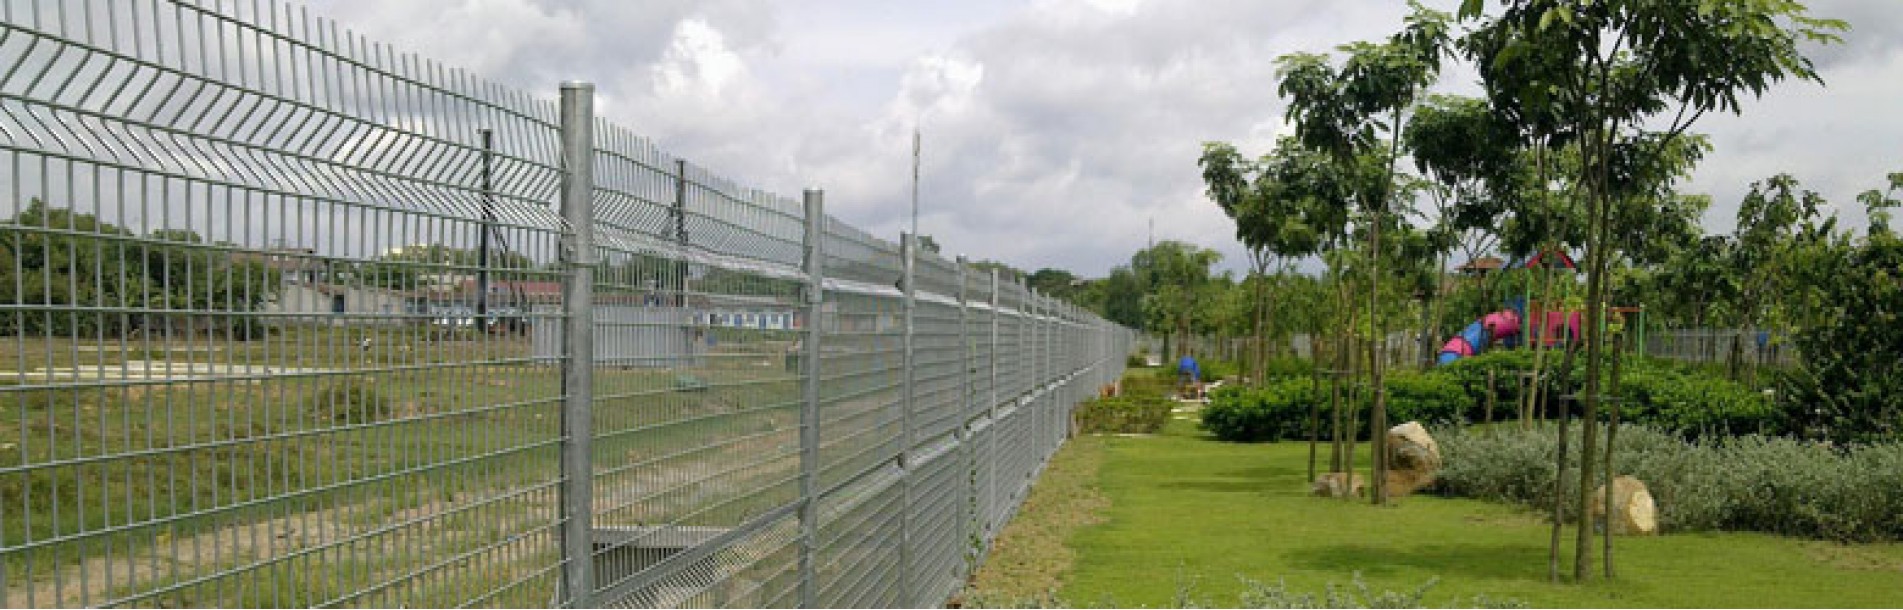 hàng rào mạ kẽm